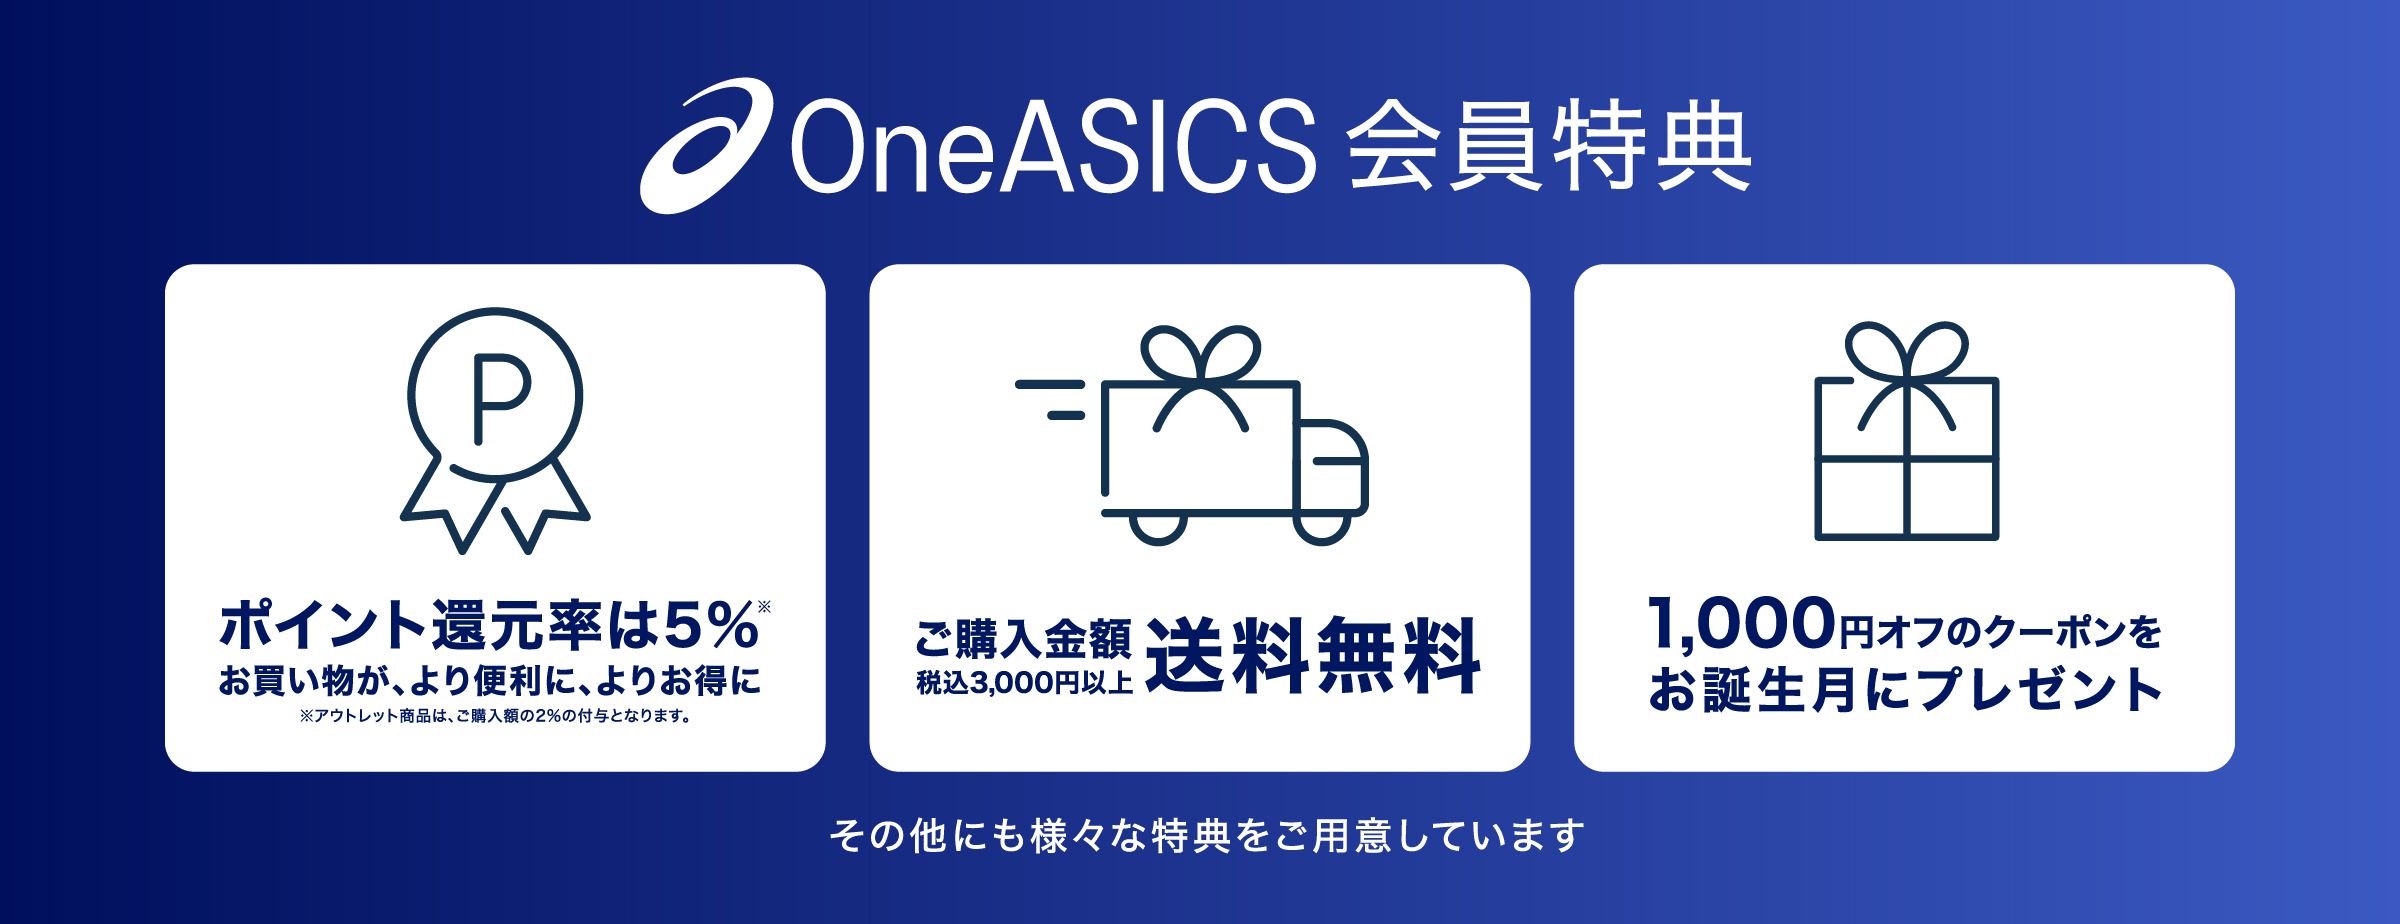 OneASICS 会員特典 様々な特典をご用意しています